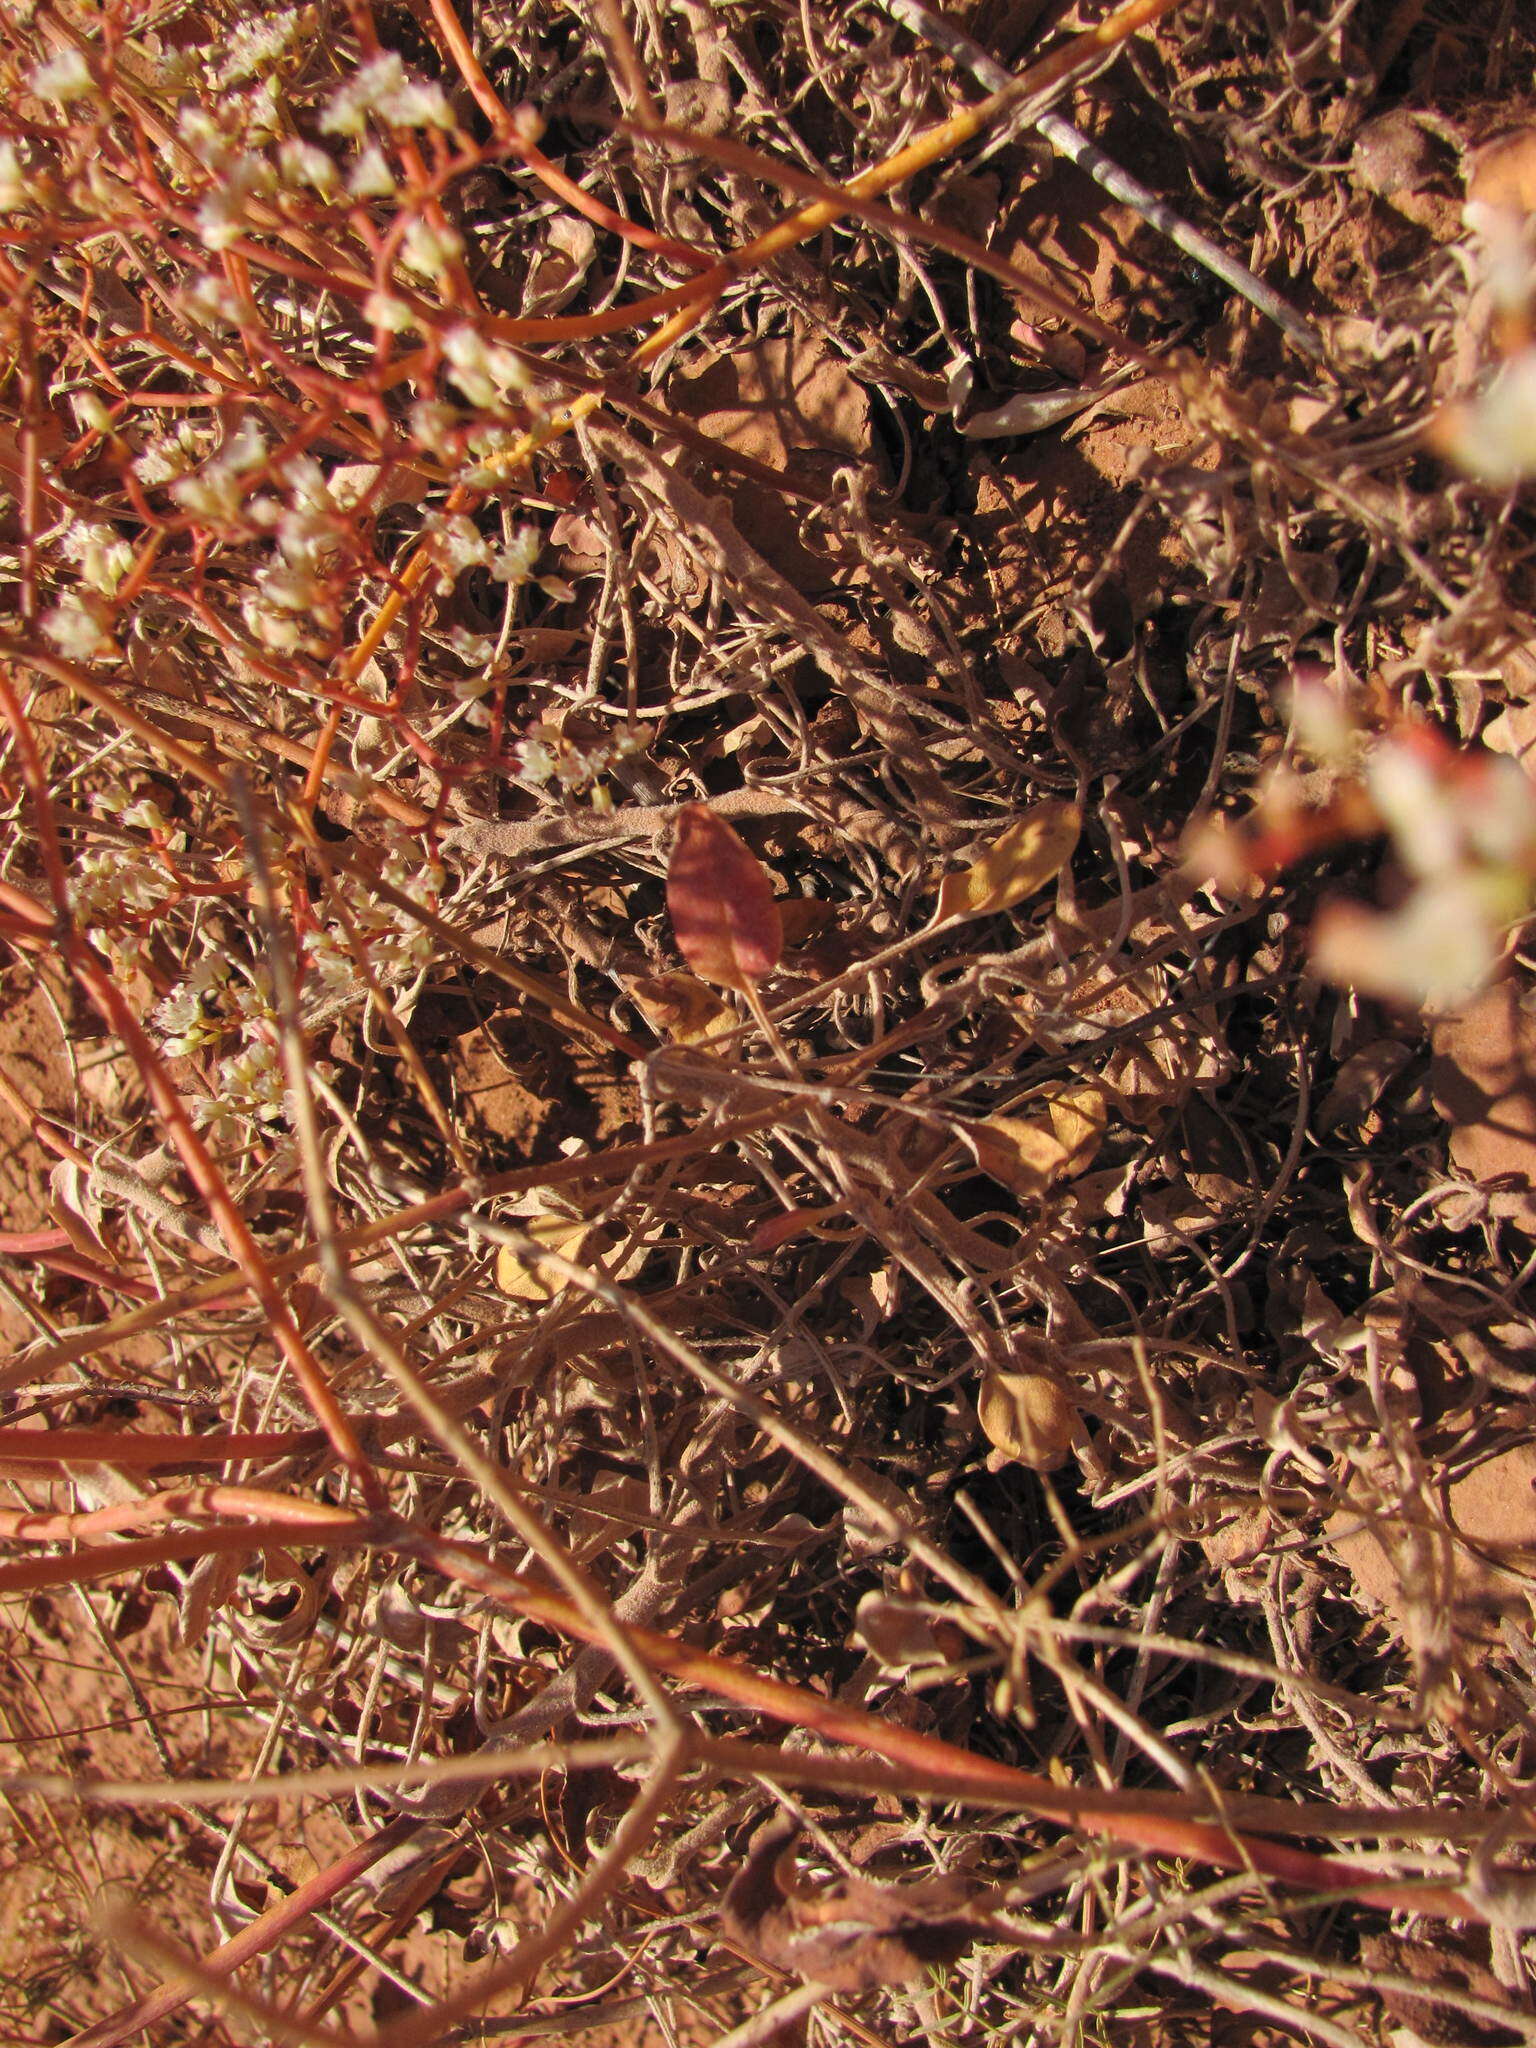 Image of Thompson's buckwheat